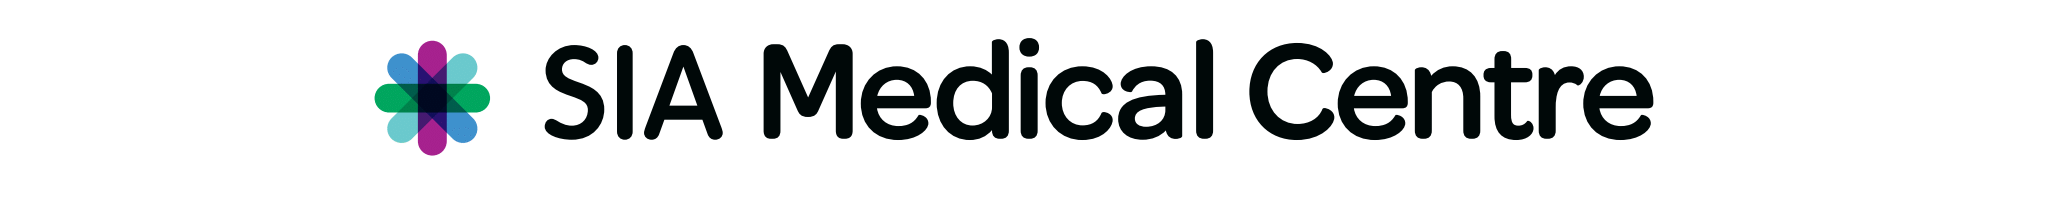 SIA Medical Centre Logo